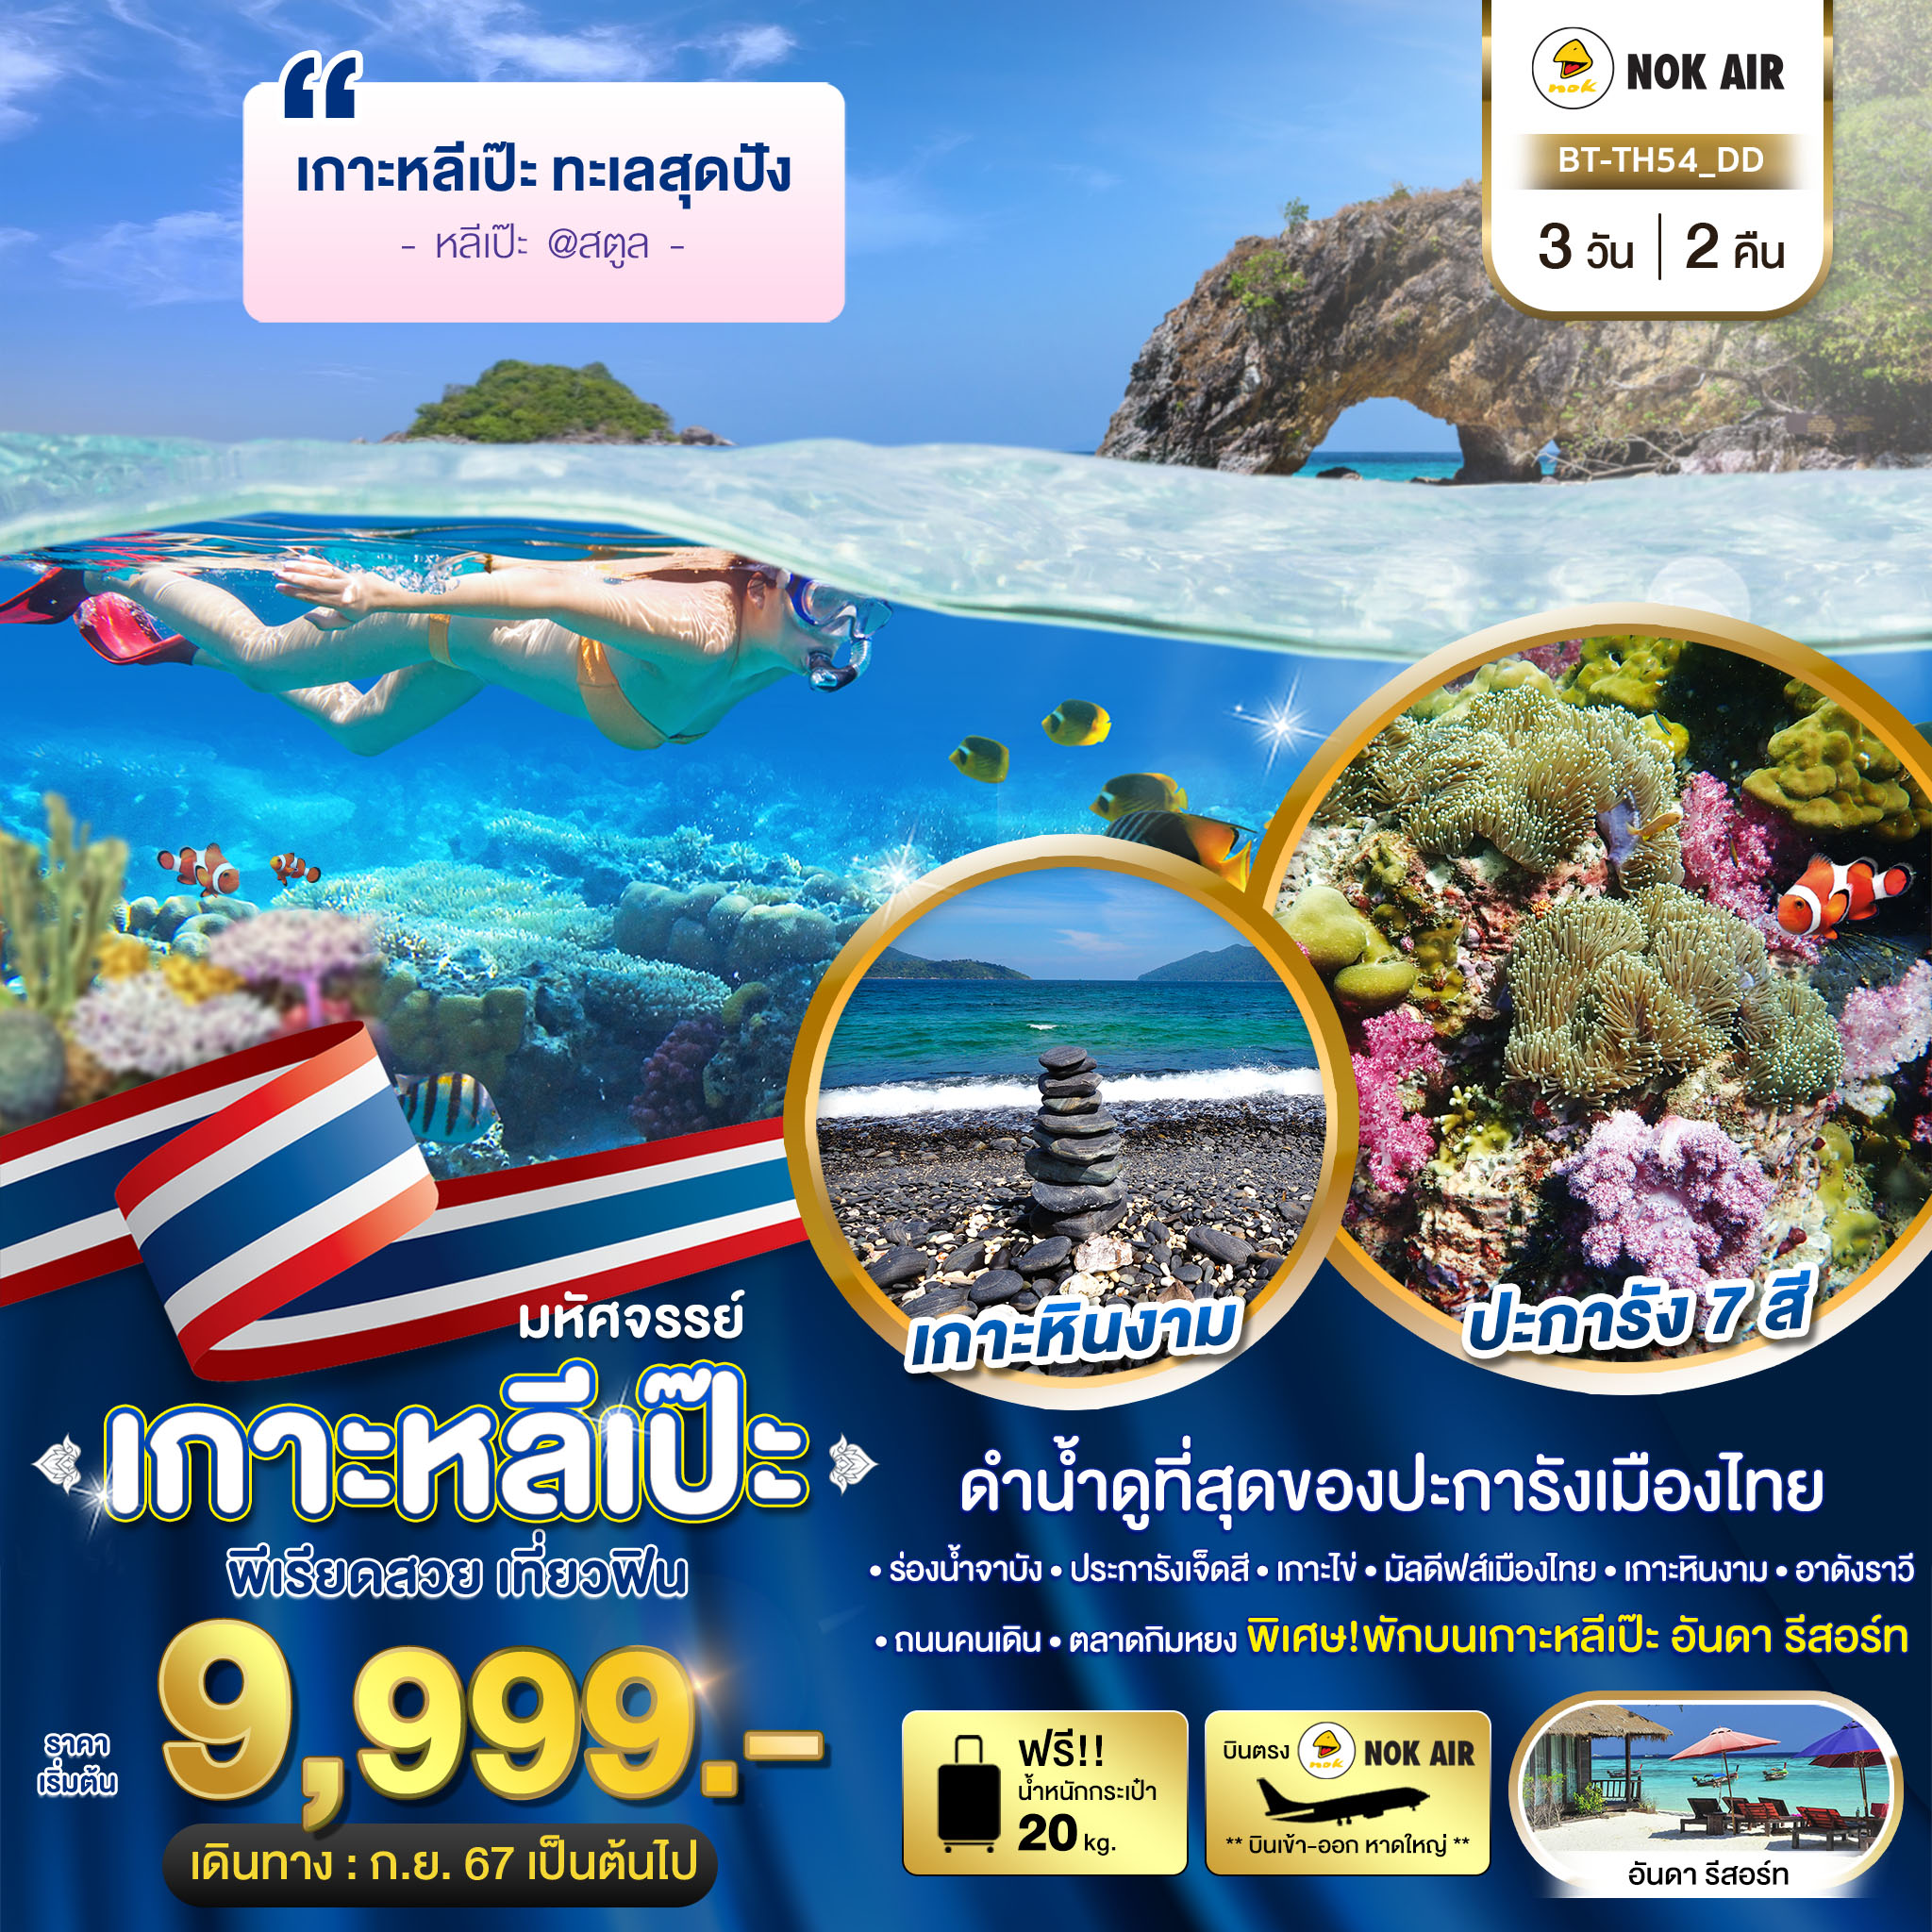 เที่ยวไทย เกาะหลีเป๊ะ ทะเลสุดปัง ดำน้ำดูที่สุดของประการังเมืองไทย 3 วัน 2 คืน (DD)